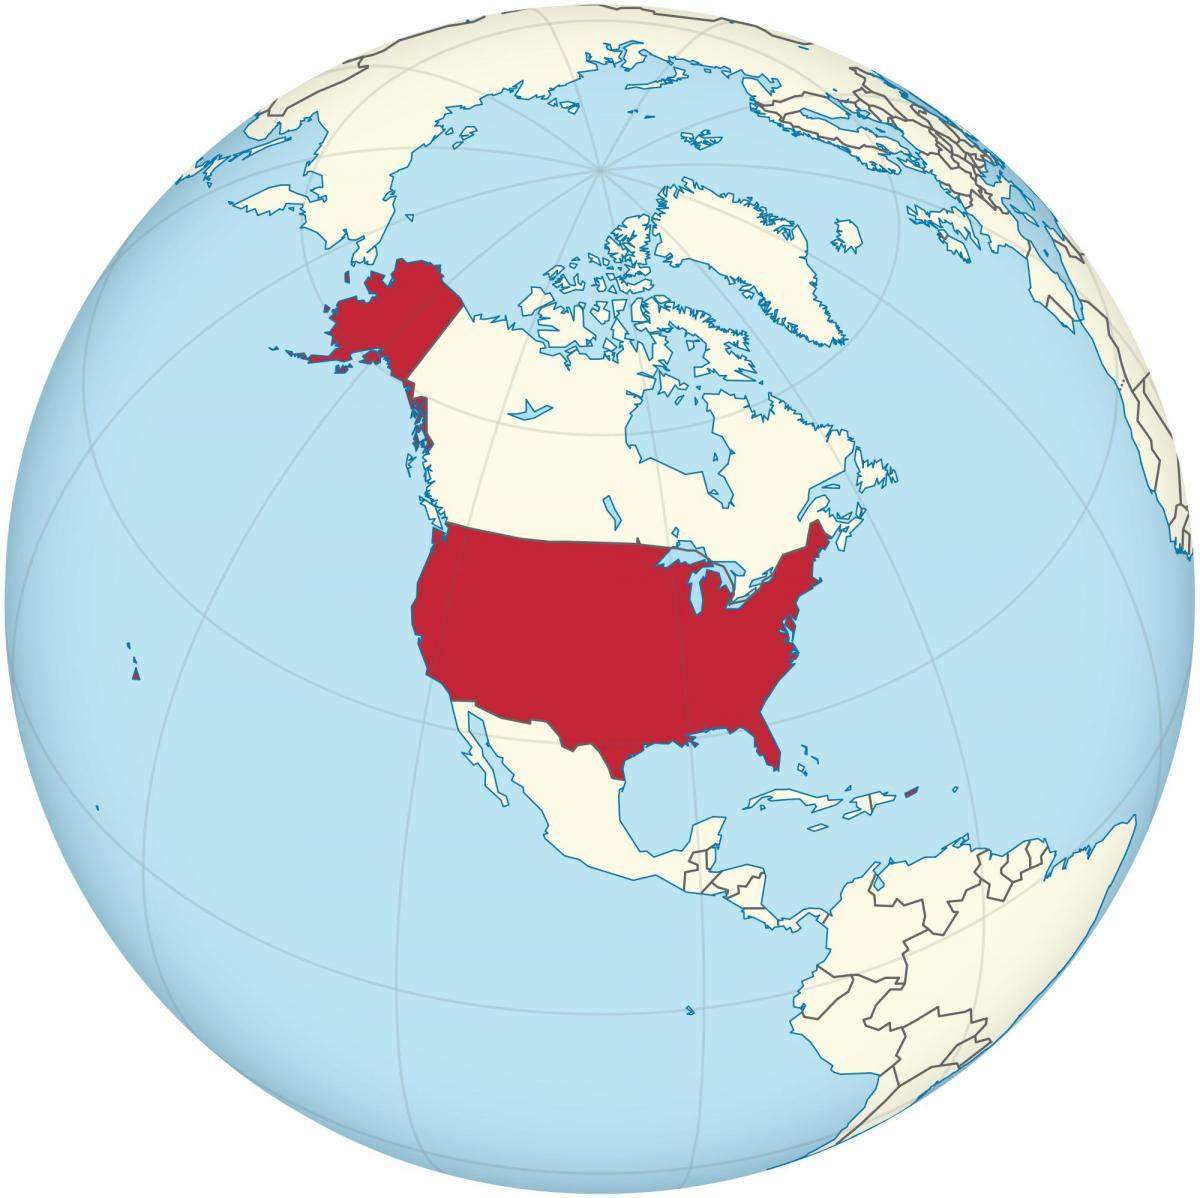 美国在美洲地图上的位置